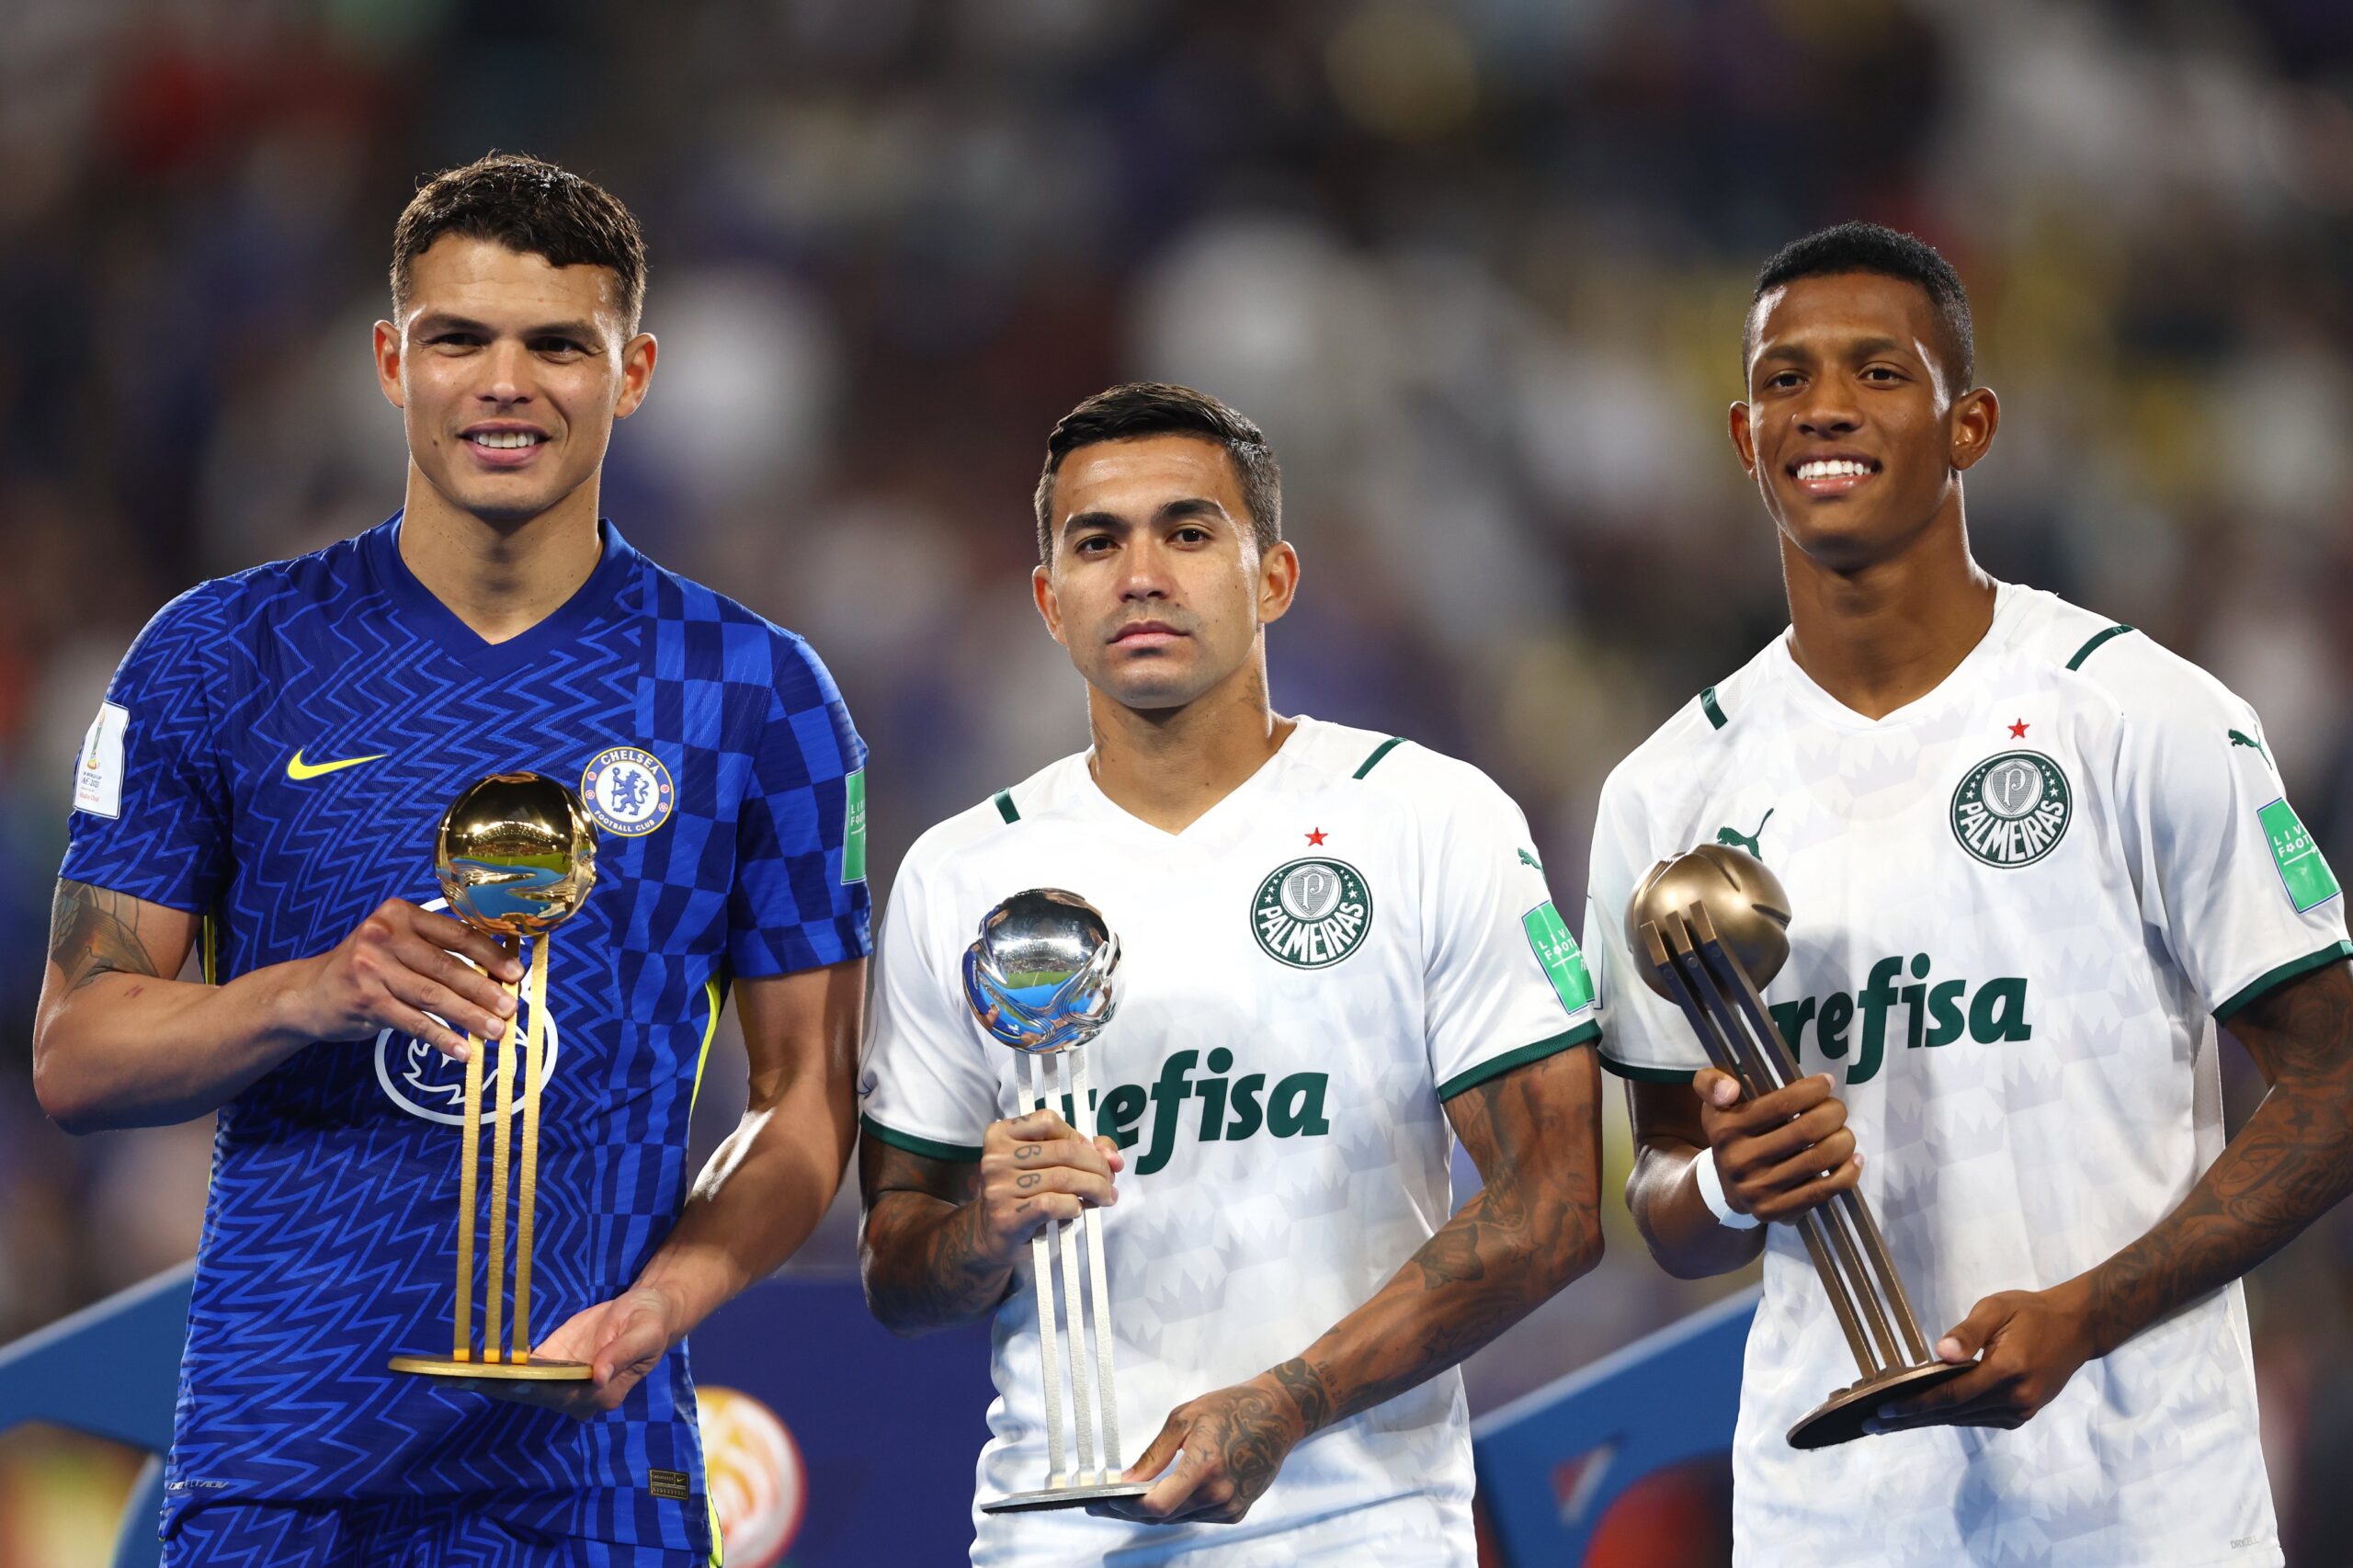 Fifa premia Dudu e Danilo, segundo e terceiro melhores jogadores